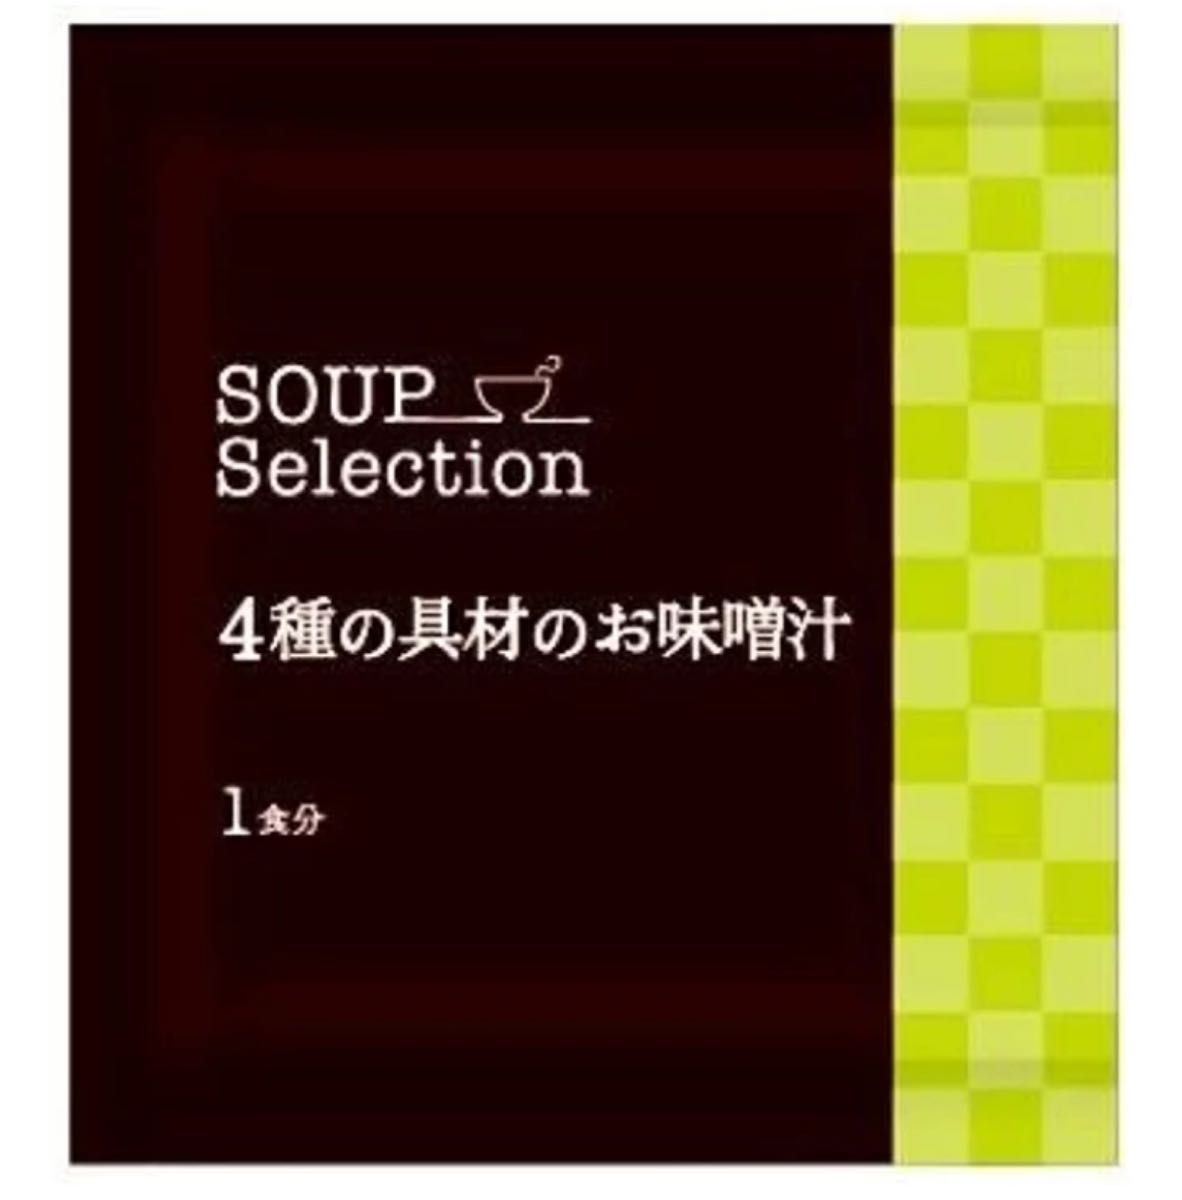 和光堂 スープセレクション 4種の具材のお味噌汁(10袋入) 箱潰れ、アウトレット